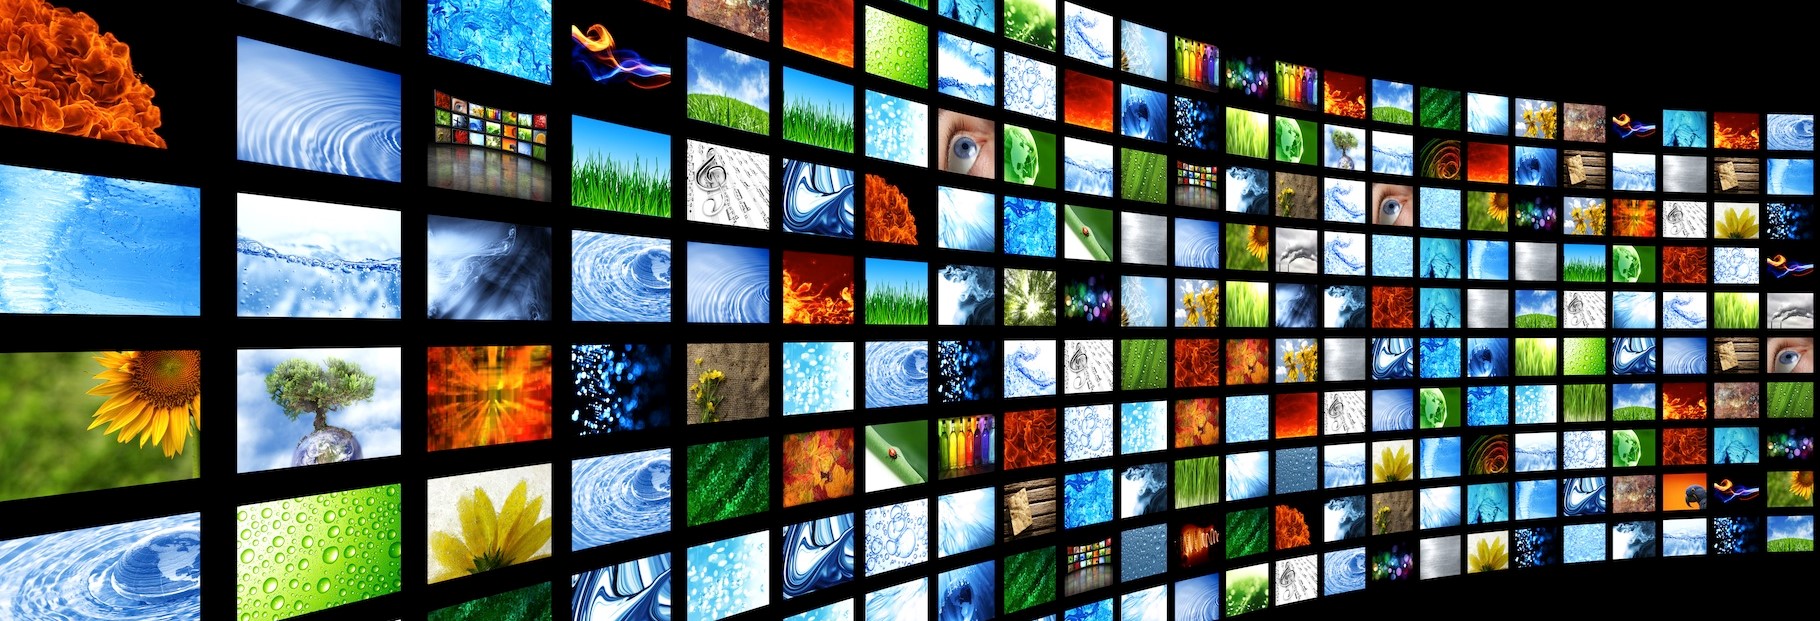 شاشات وتلفزيونات , الكترونيات- اعلن مجاناً في منصة وموقع عنكبوت للاعلانات المجانية المبوبة|photos/2018/03/slider1-tv-screens.jpeg